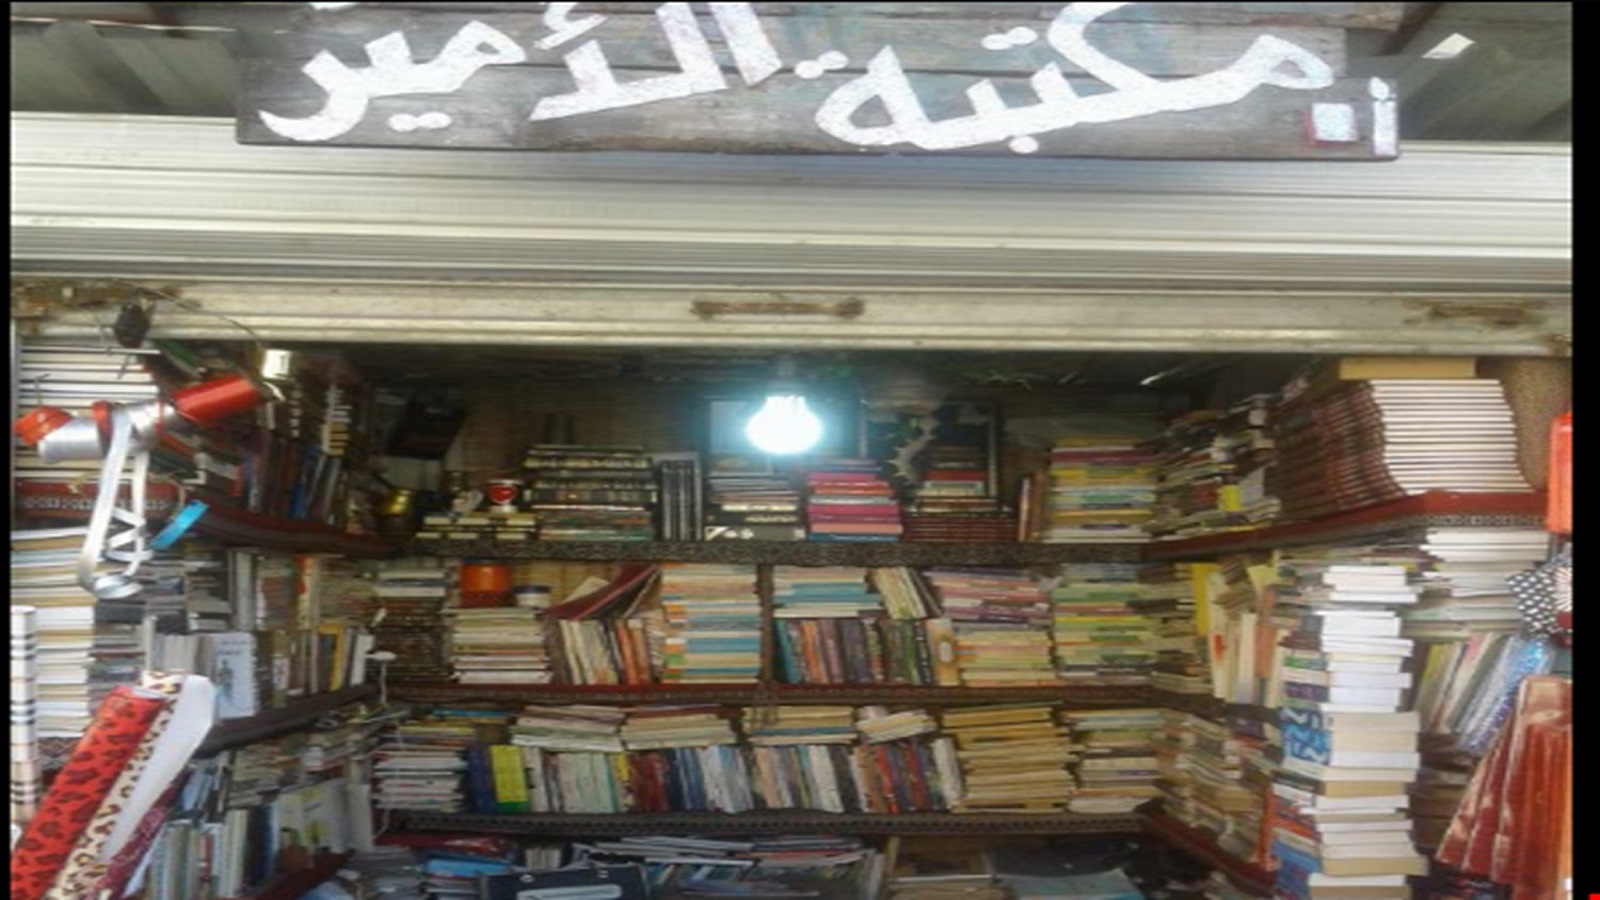 تحت خط الفقر السوري..ما قيمة القراءة؟ أو قرصنة كتاب؟